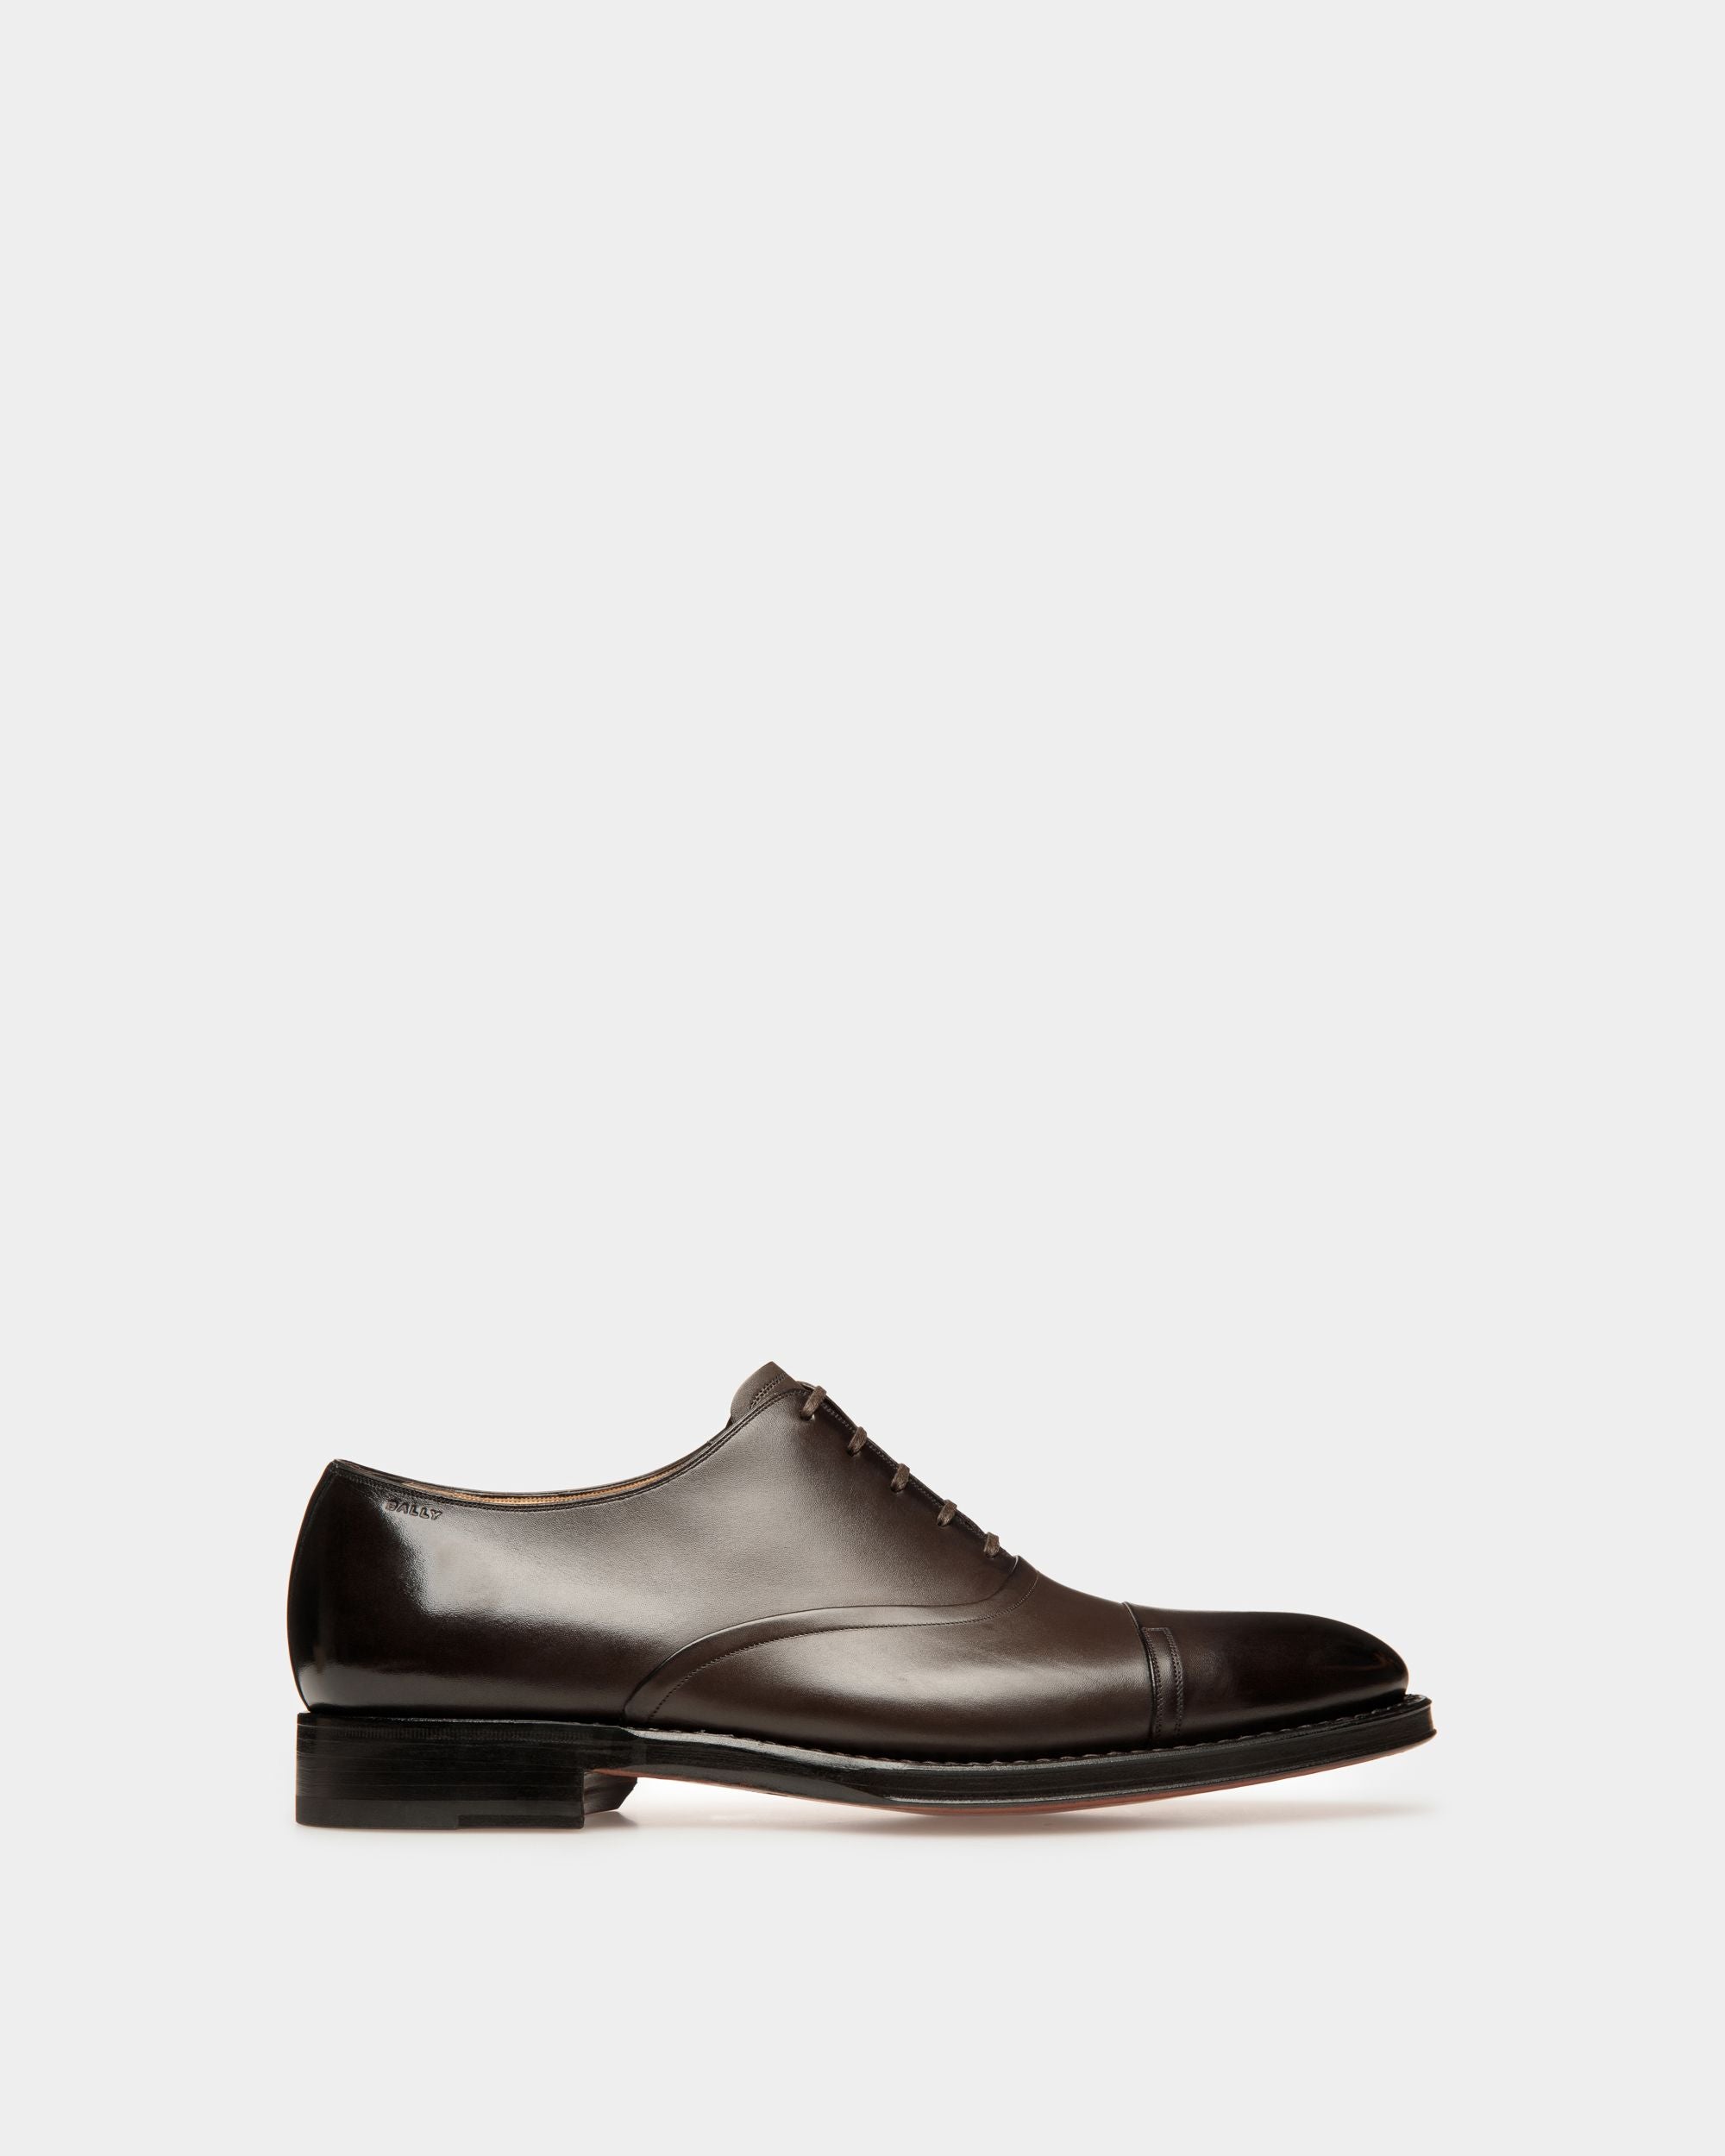 Scribe Un | Oxford-Schuh für Herren aus Leder in Ebenholz | Bally | Still Life Seite